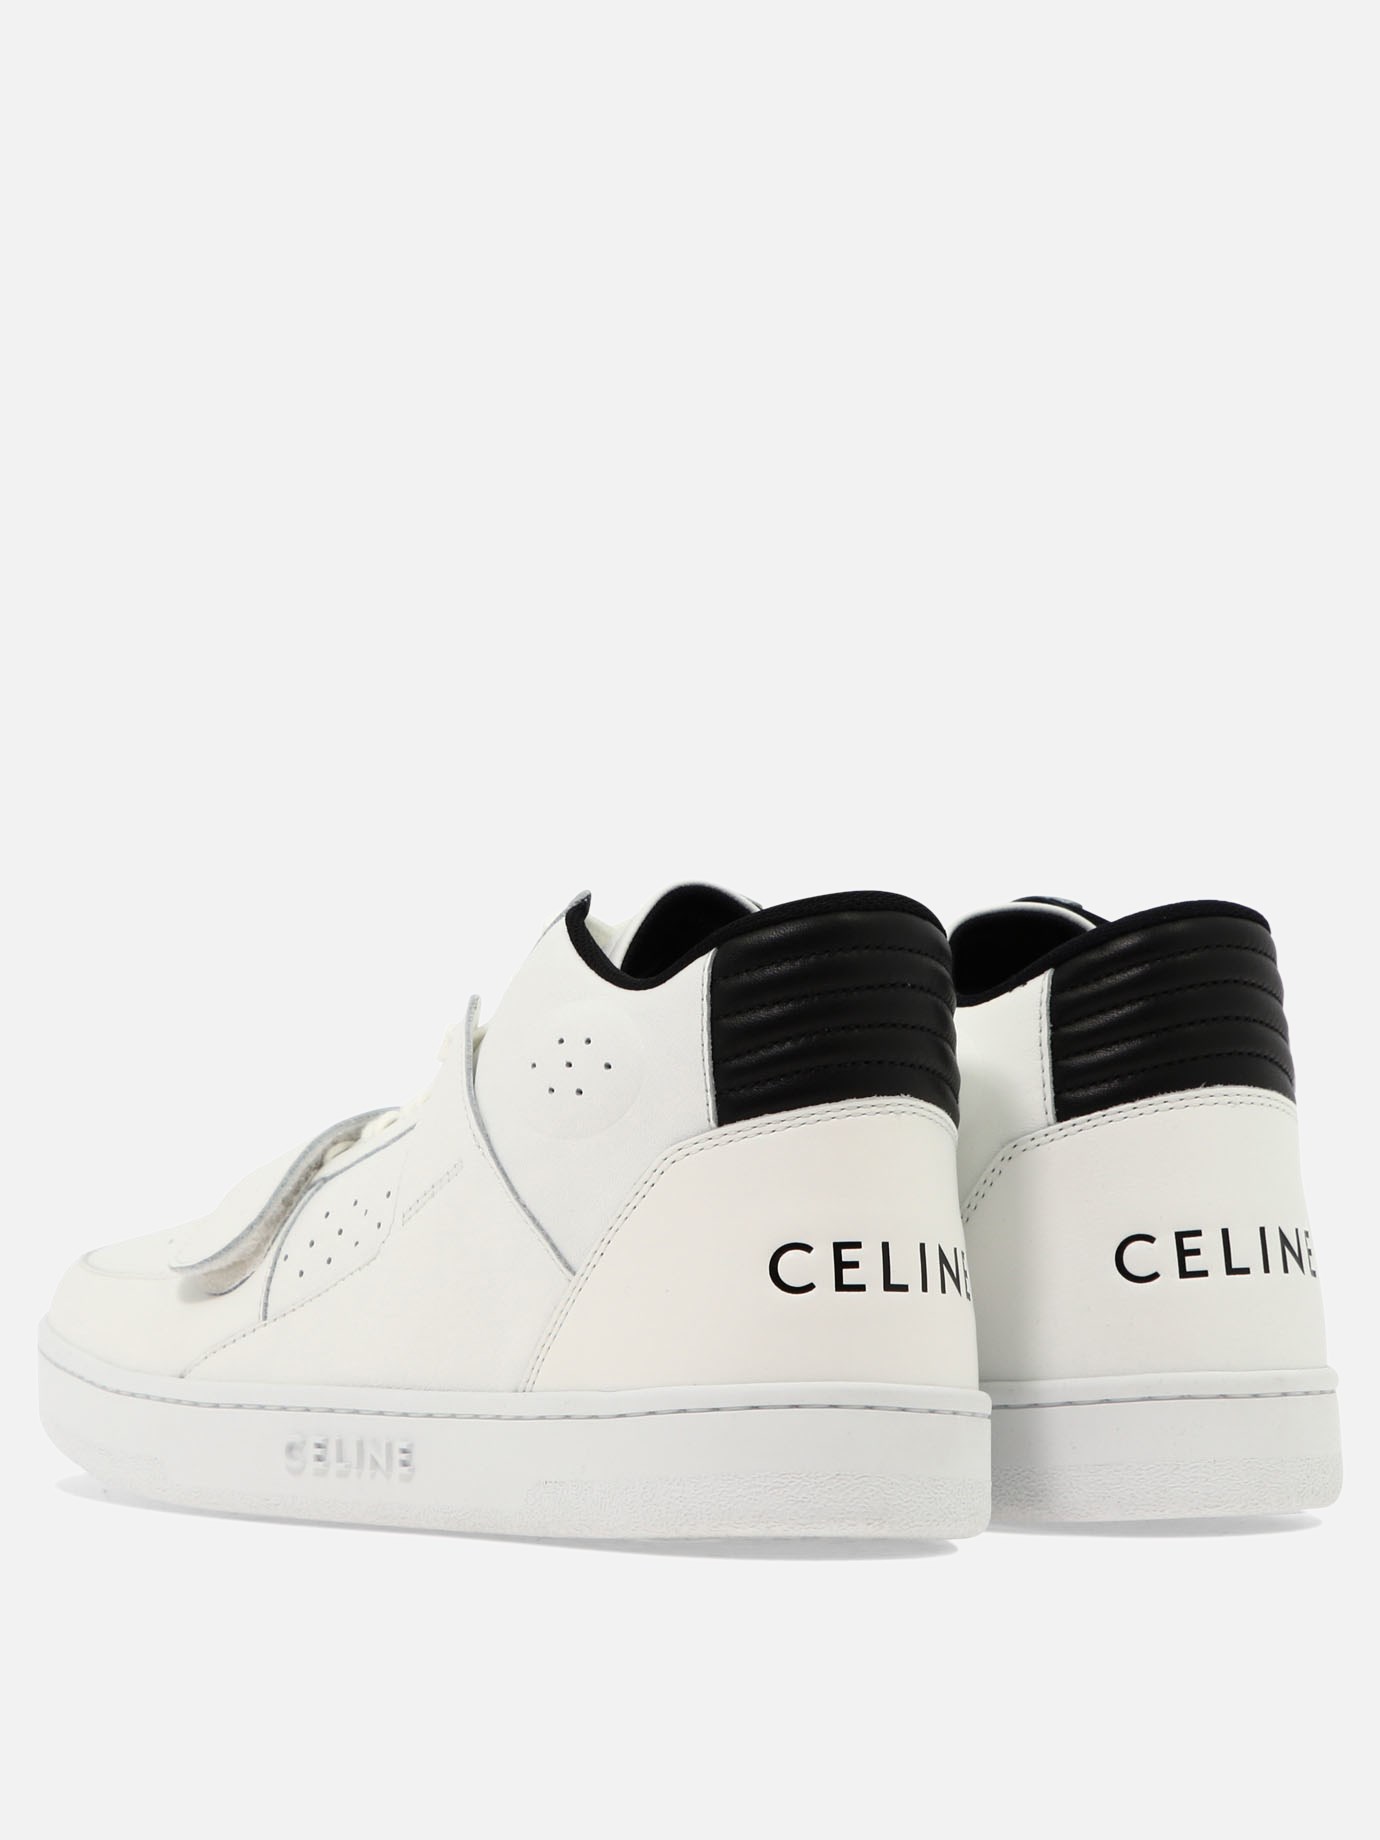 Sneaker  CT-02  by Celine